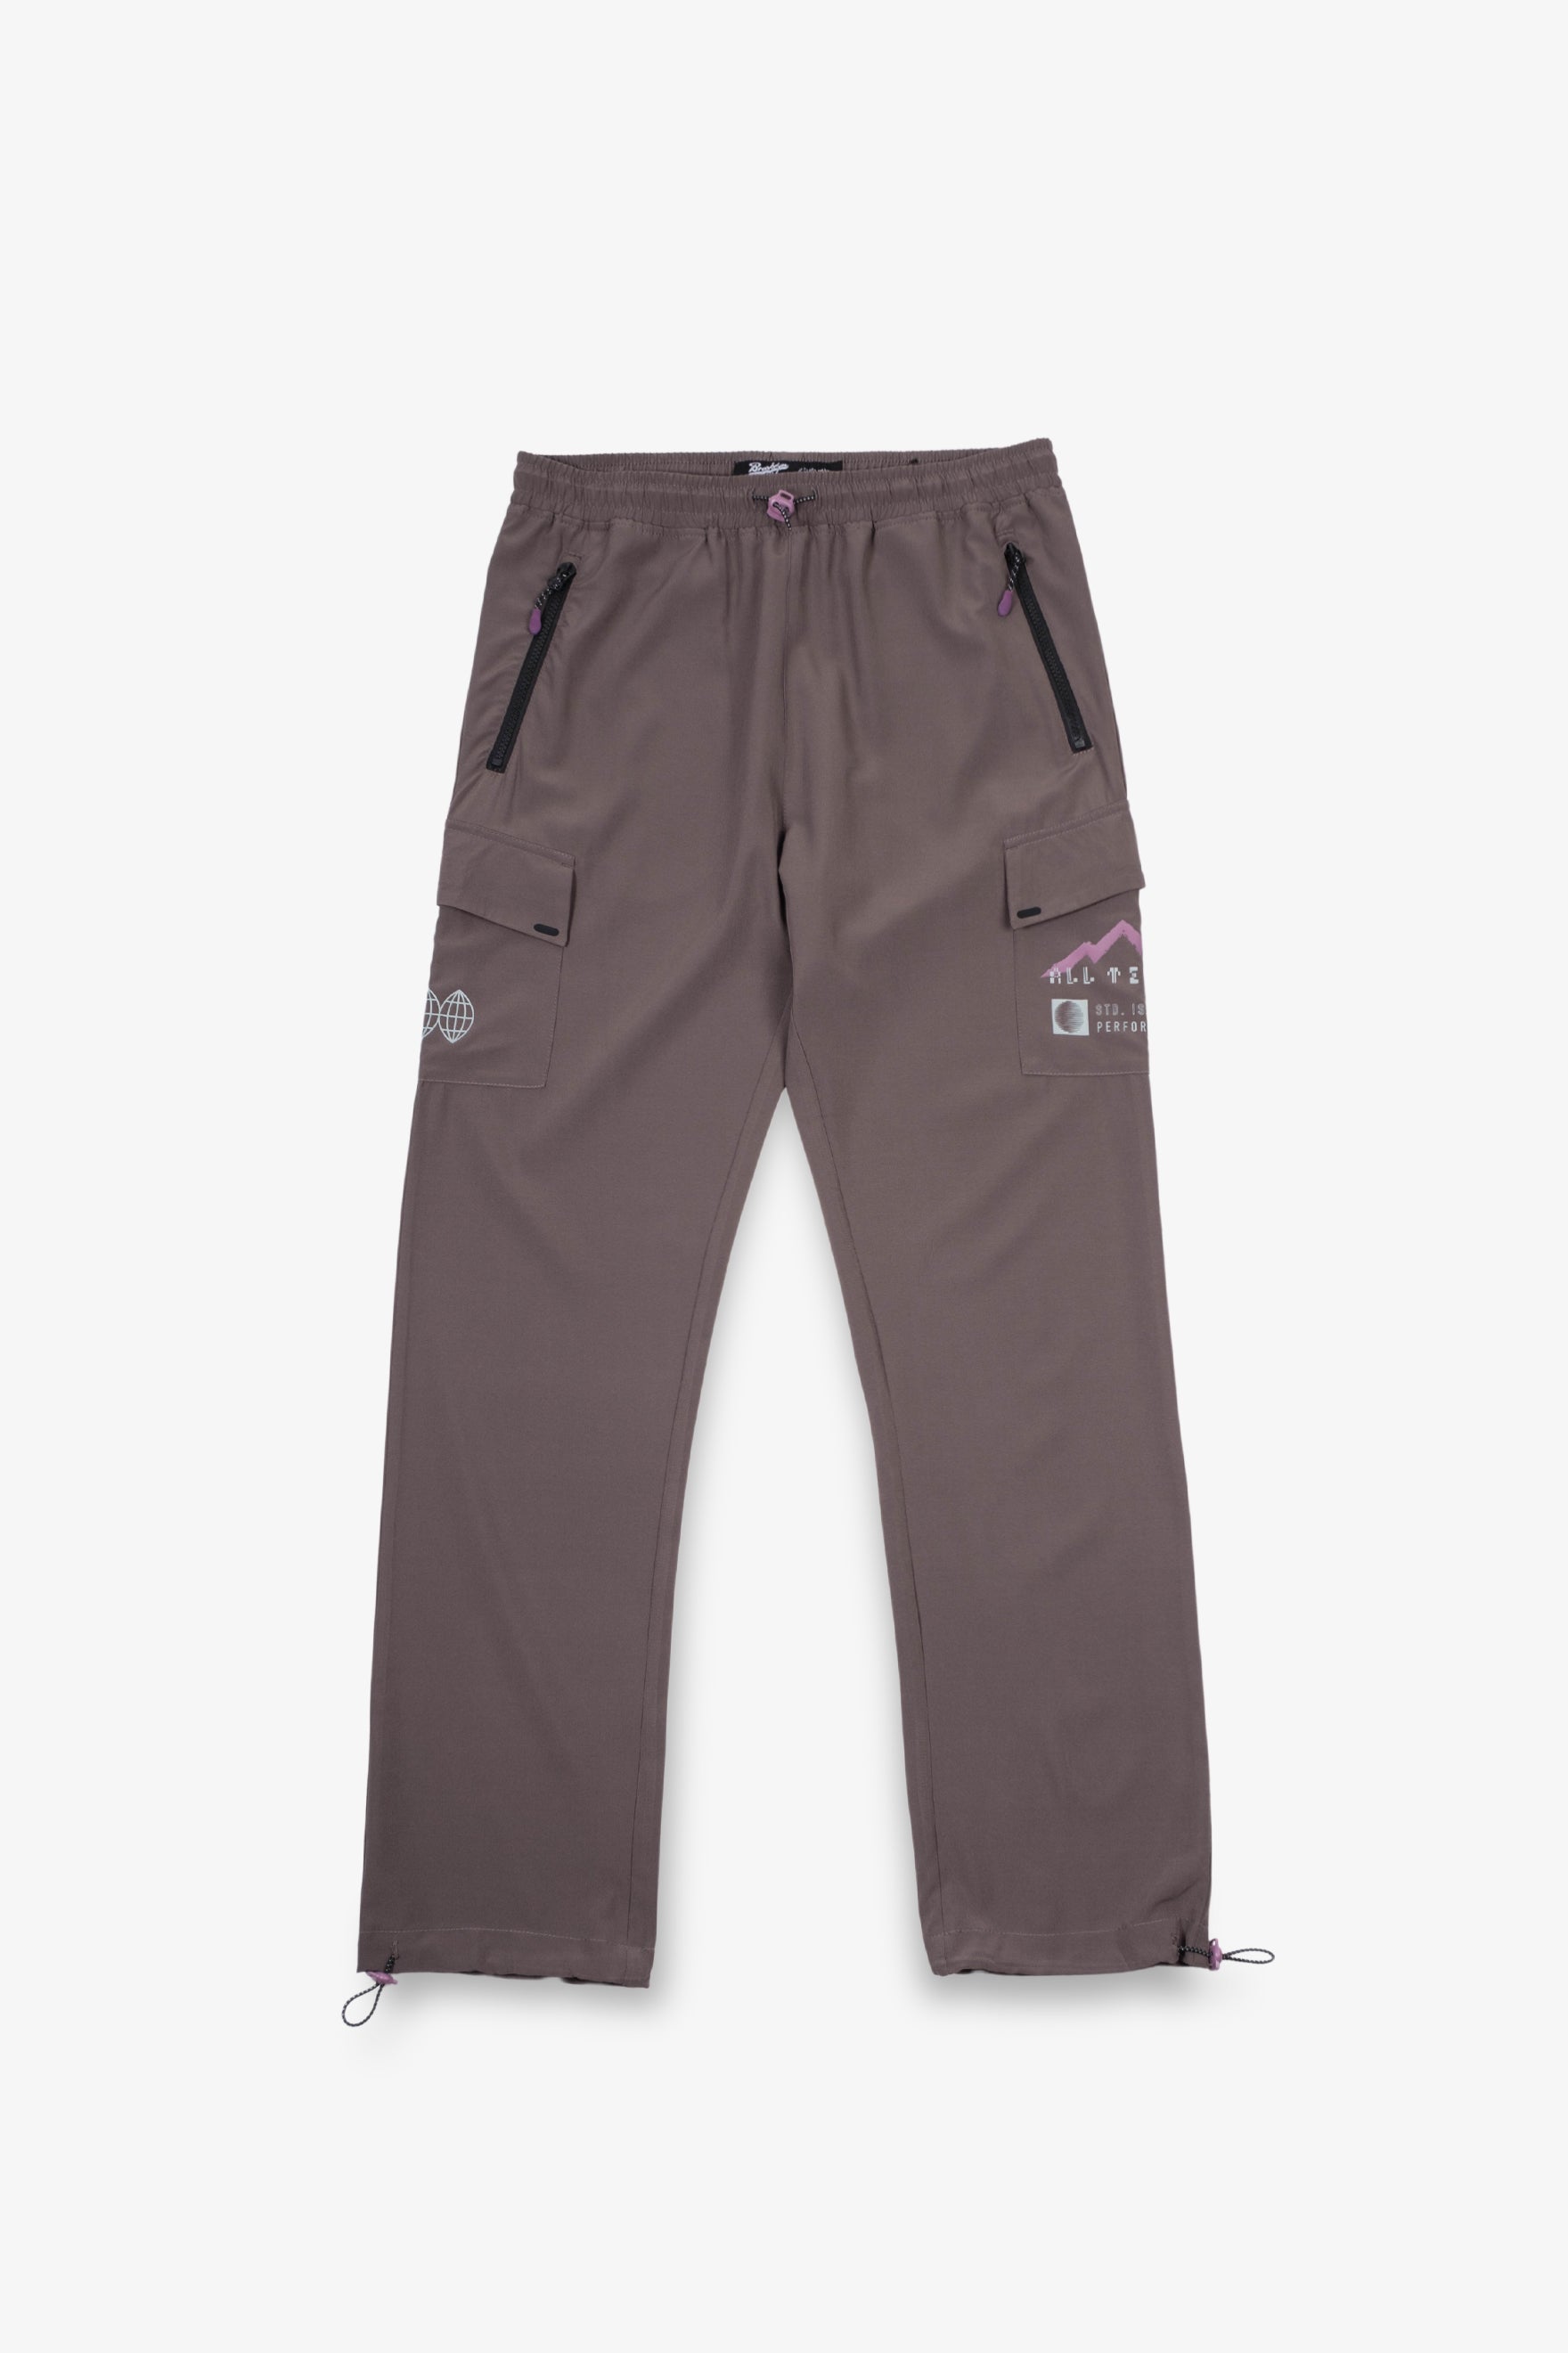 Pantalon sous-vêtement pour homme - 412174 - Mares - en néoprène